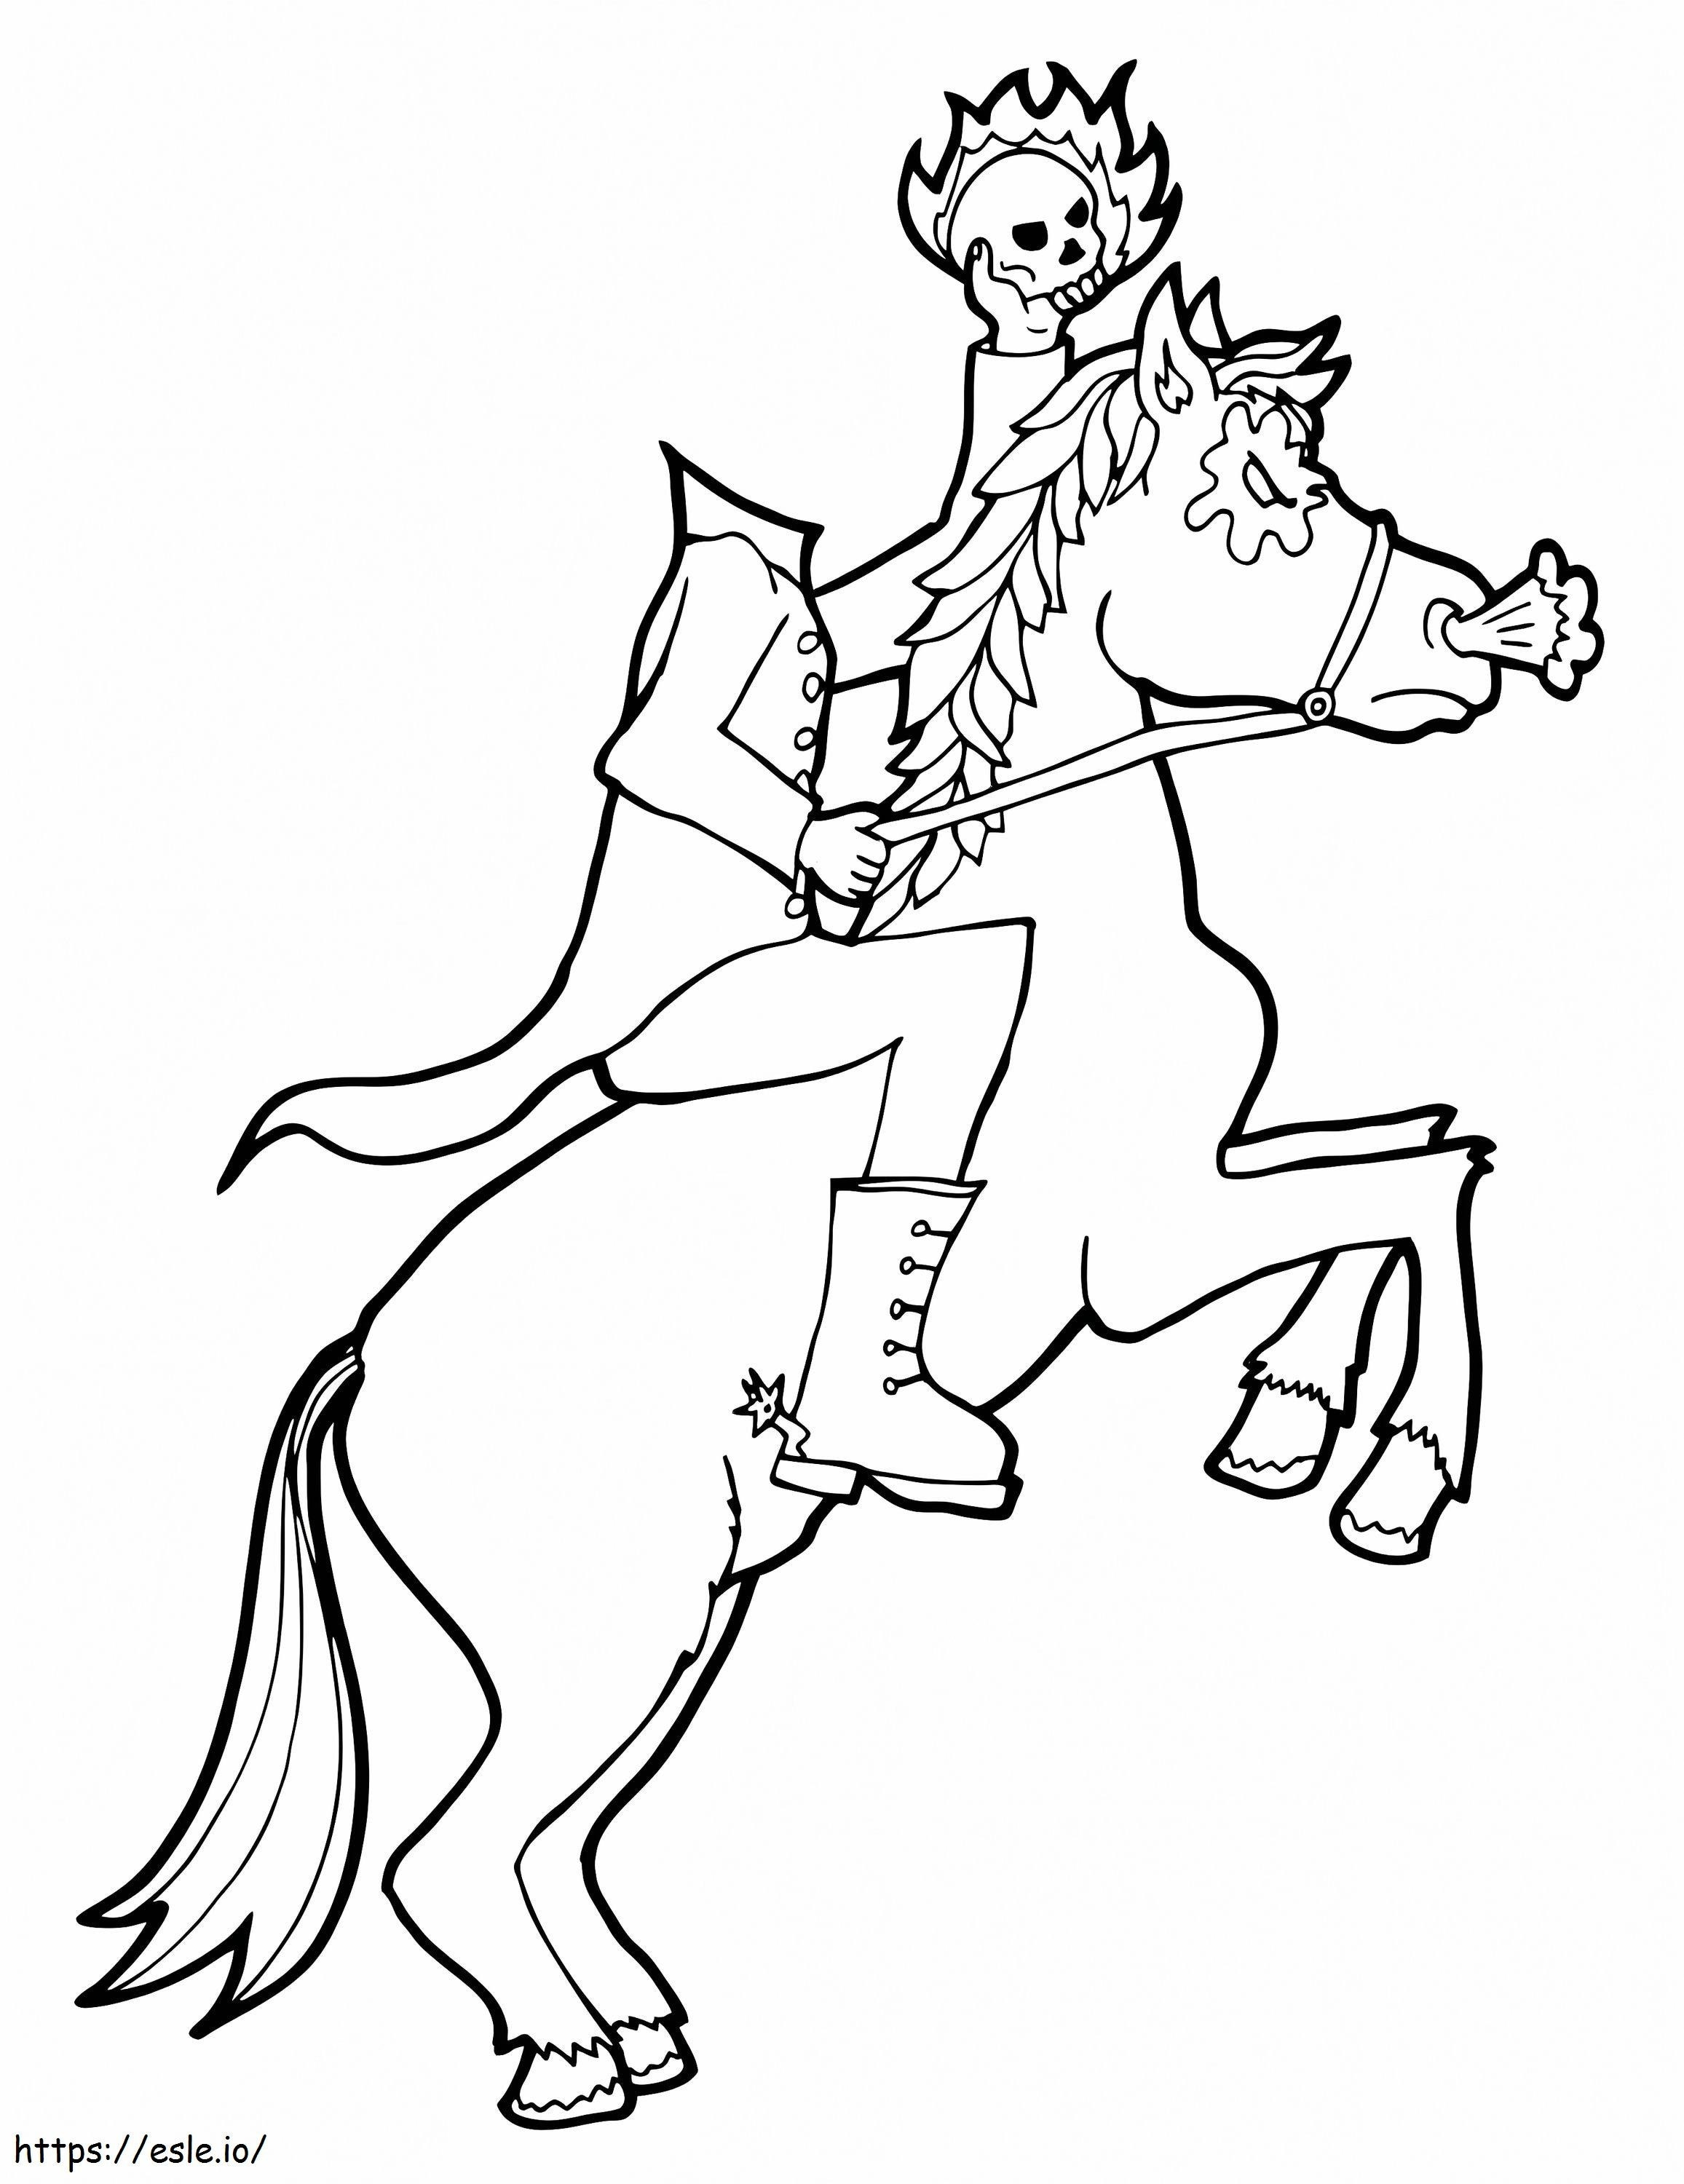 Creepy Headless Horseman coloring page